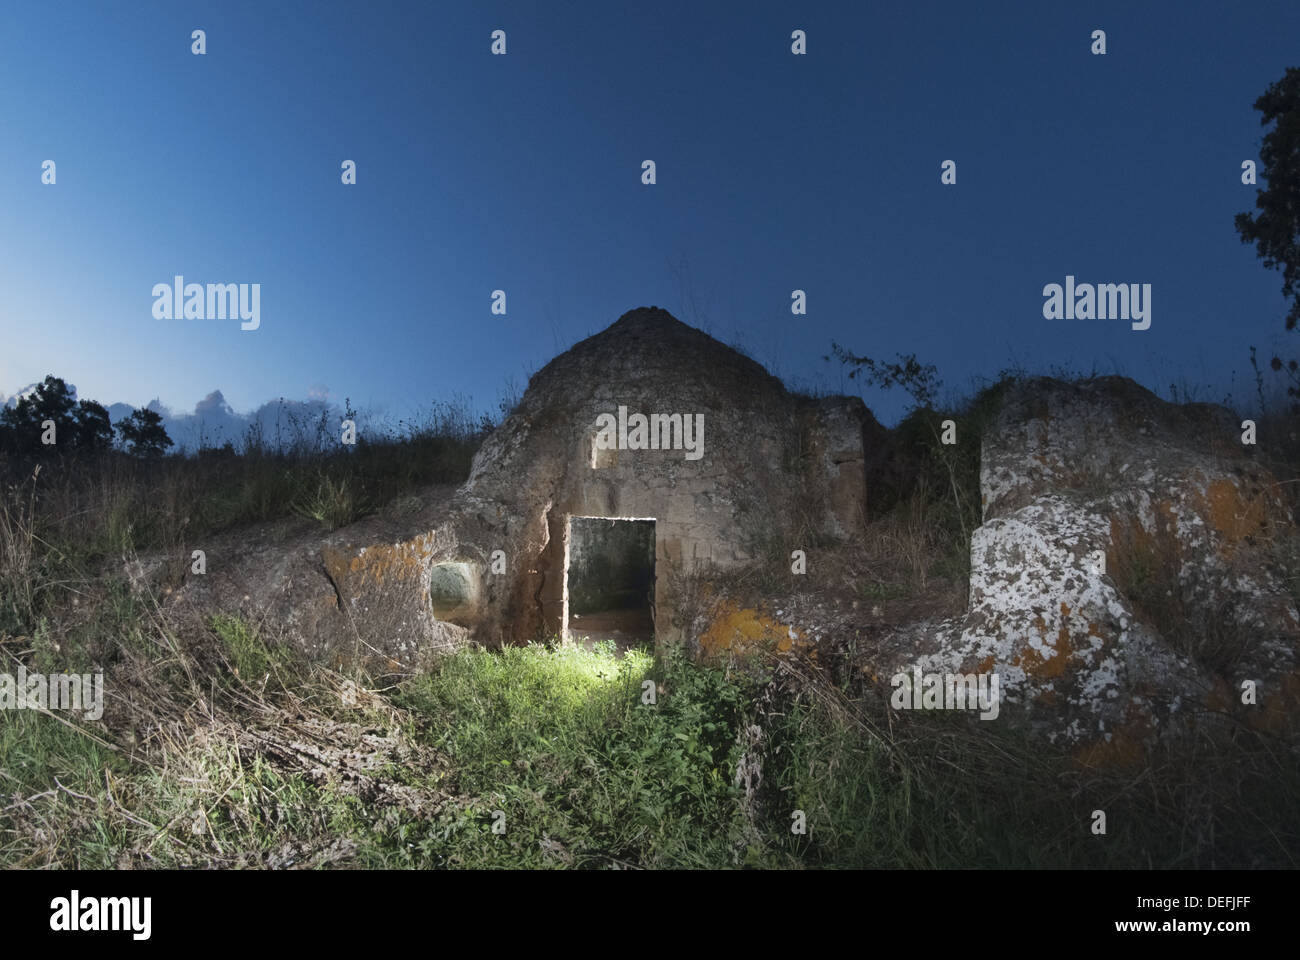 Ce qu'on appelle 'Stone Hut', construit sur une nécropole étrusque, Tuscania, Italie Banque D'Images